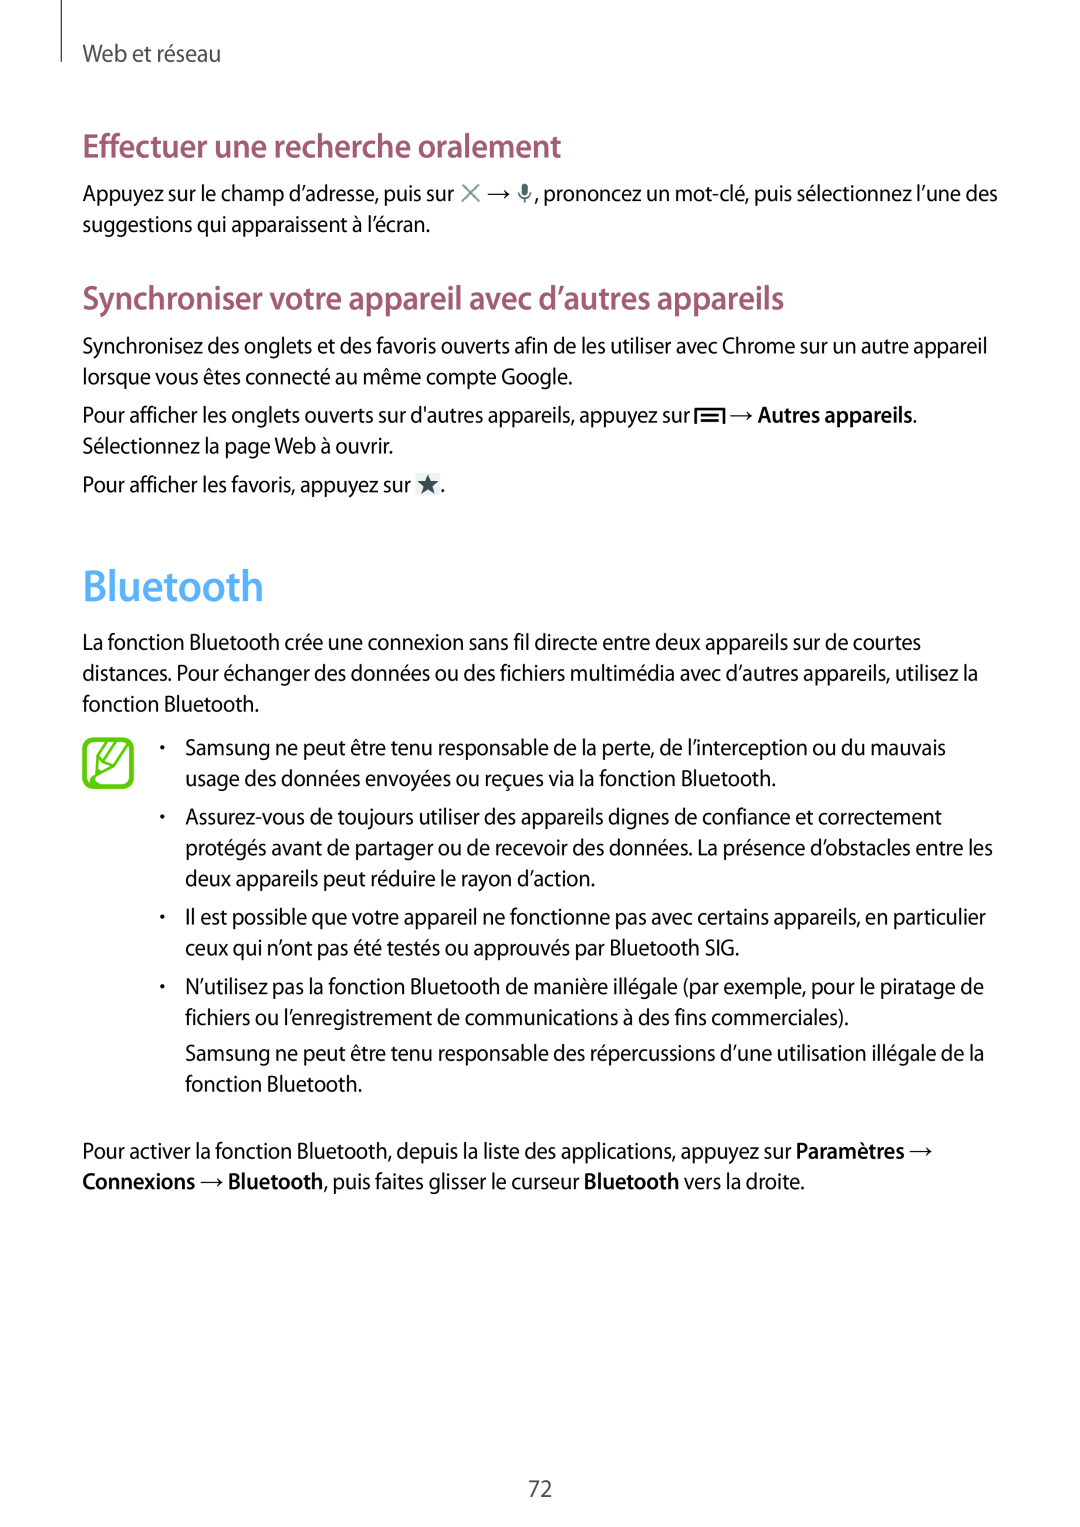 Samsung GT-N7105TADXEF Bluetooth, Synchroniser votre appareil avec d’autres appareils, Effectuer une recherche oralement 